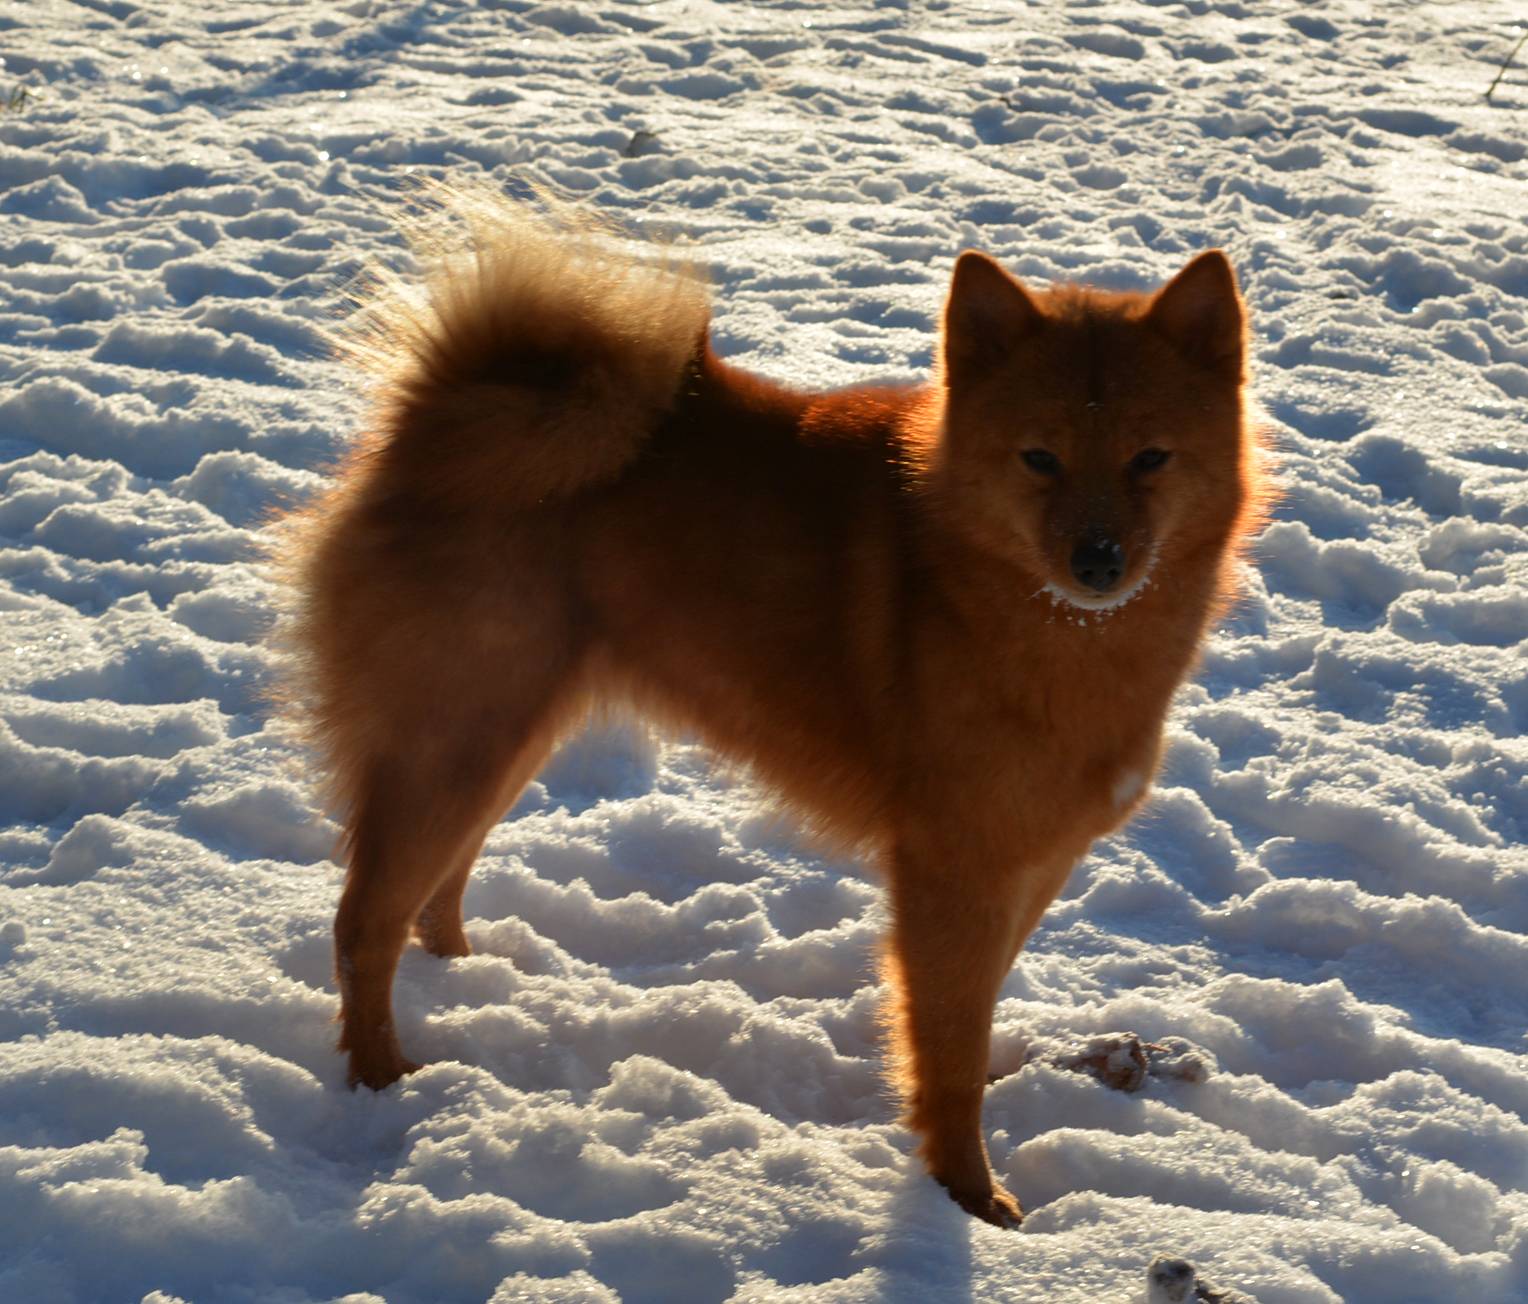 Финский шпиц: фото, цена на щенков, описание породы, отличия от других собак, характер